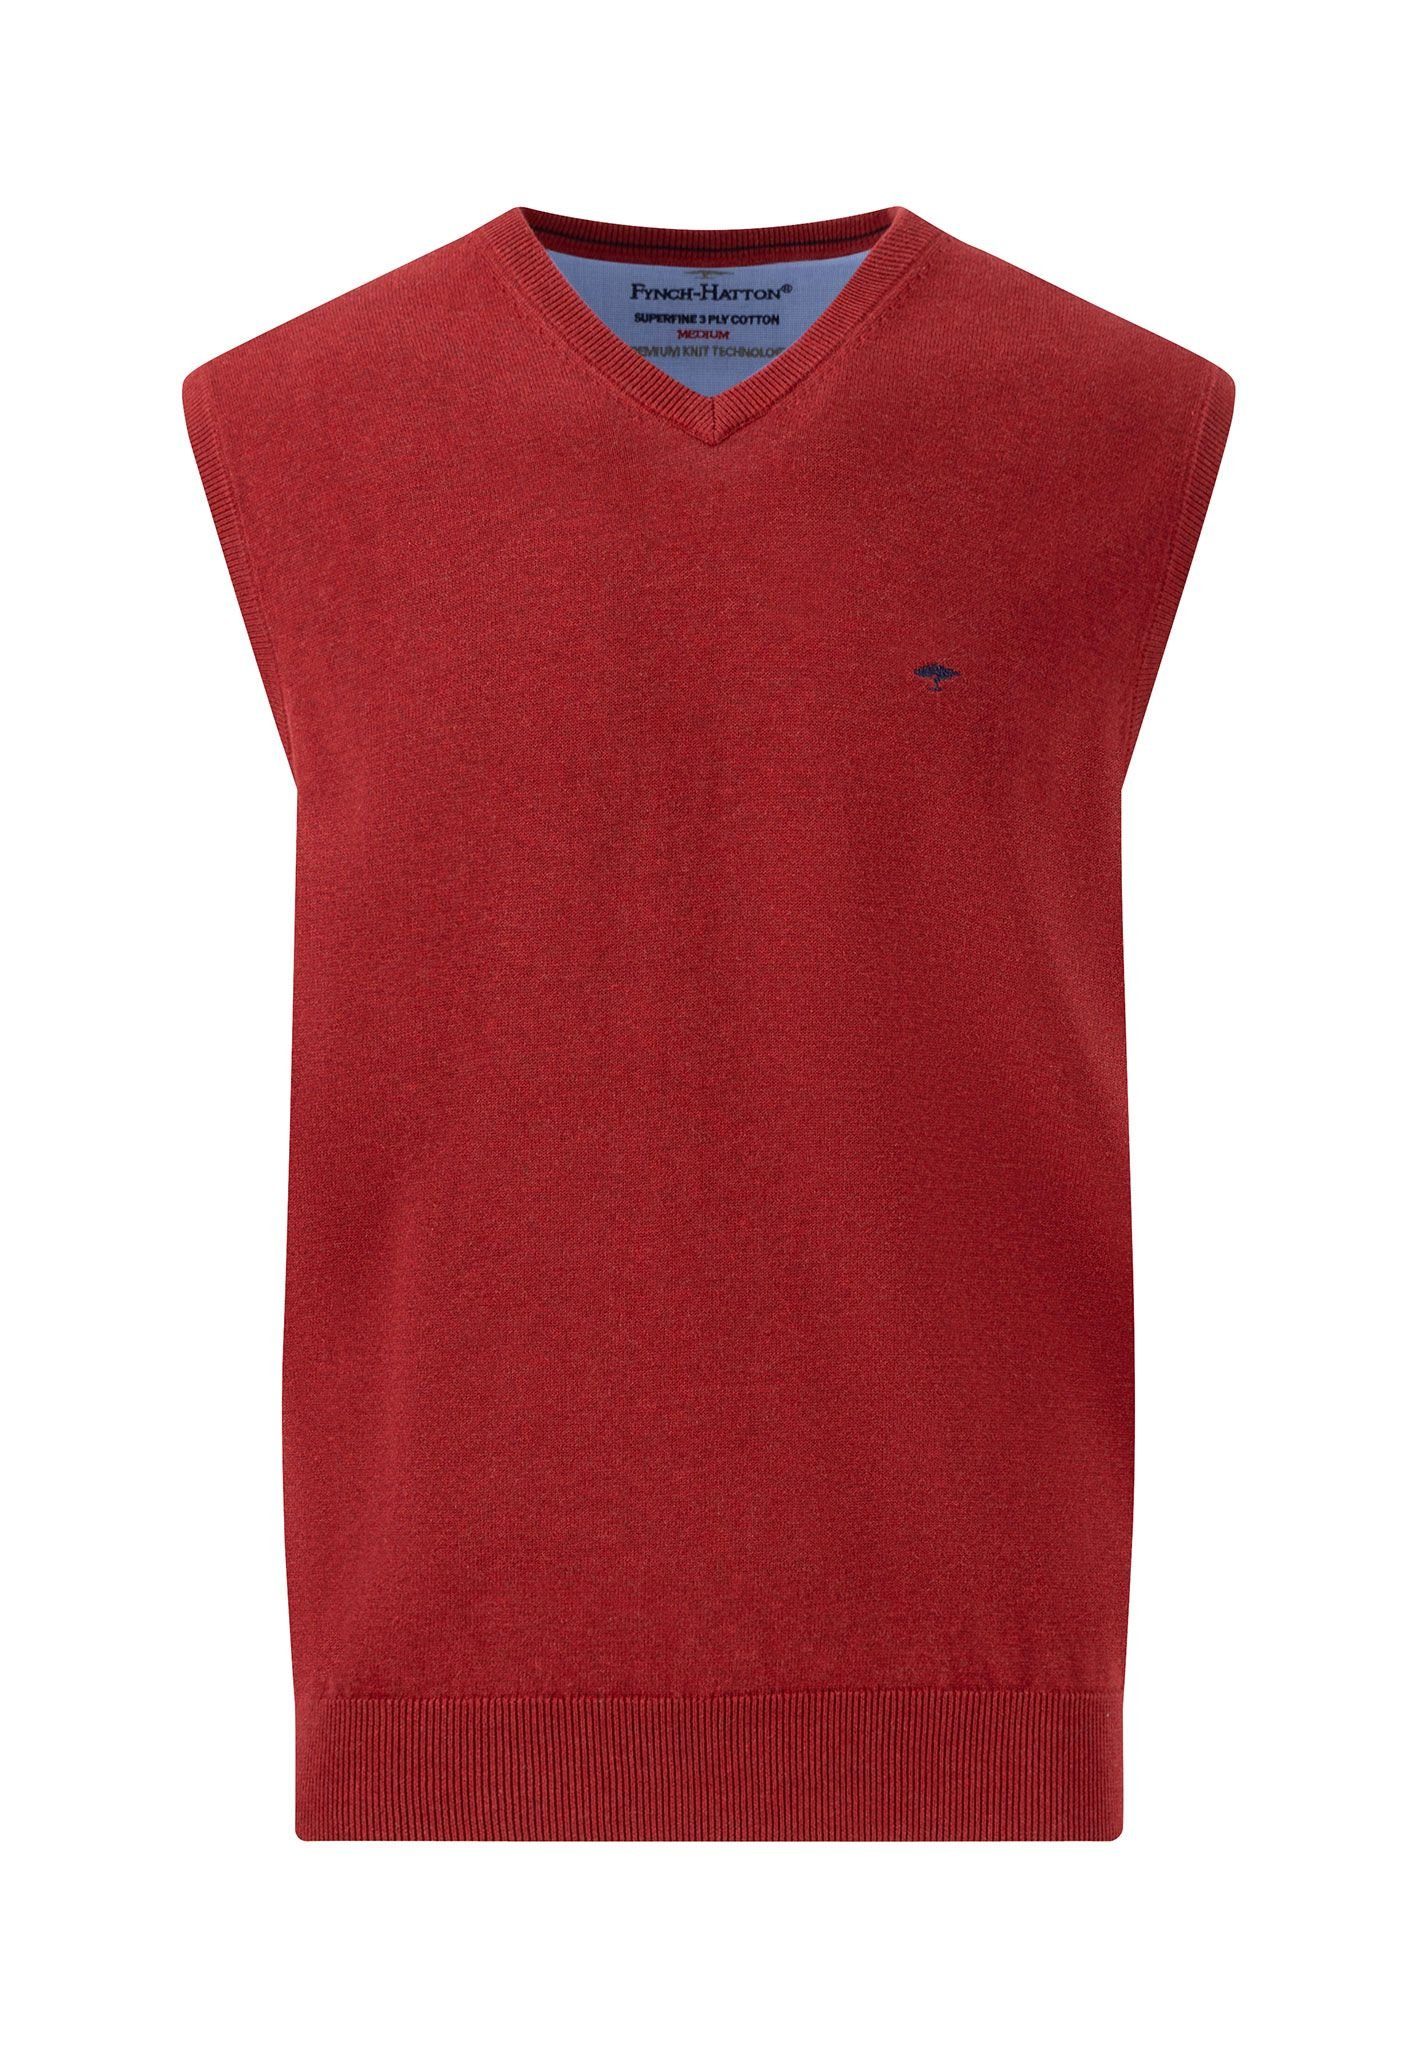 FYNCH-HATTON Pullunder Slipover - Pullover ohne Arm